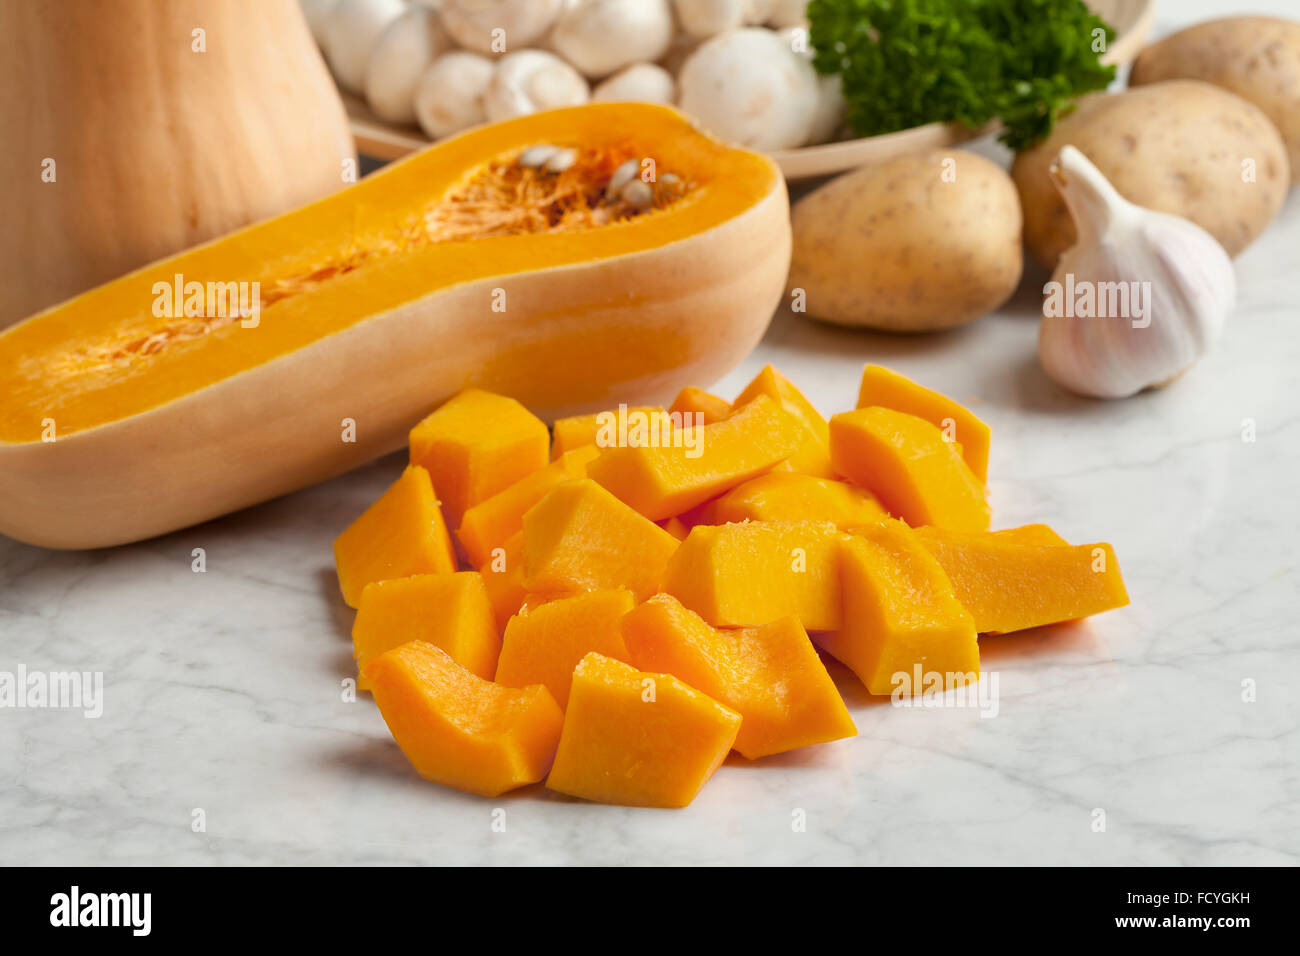 Fresh butternut pumpkin cut into pieces Stock Photo